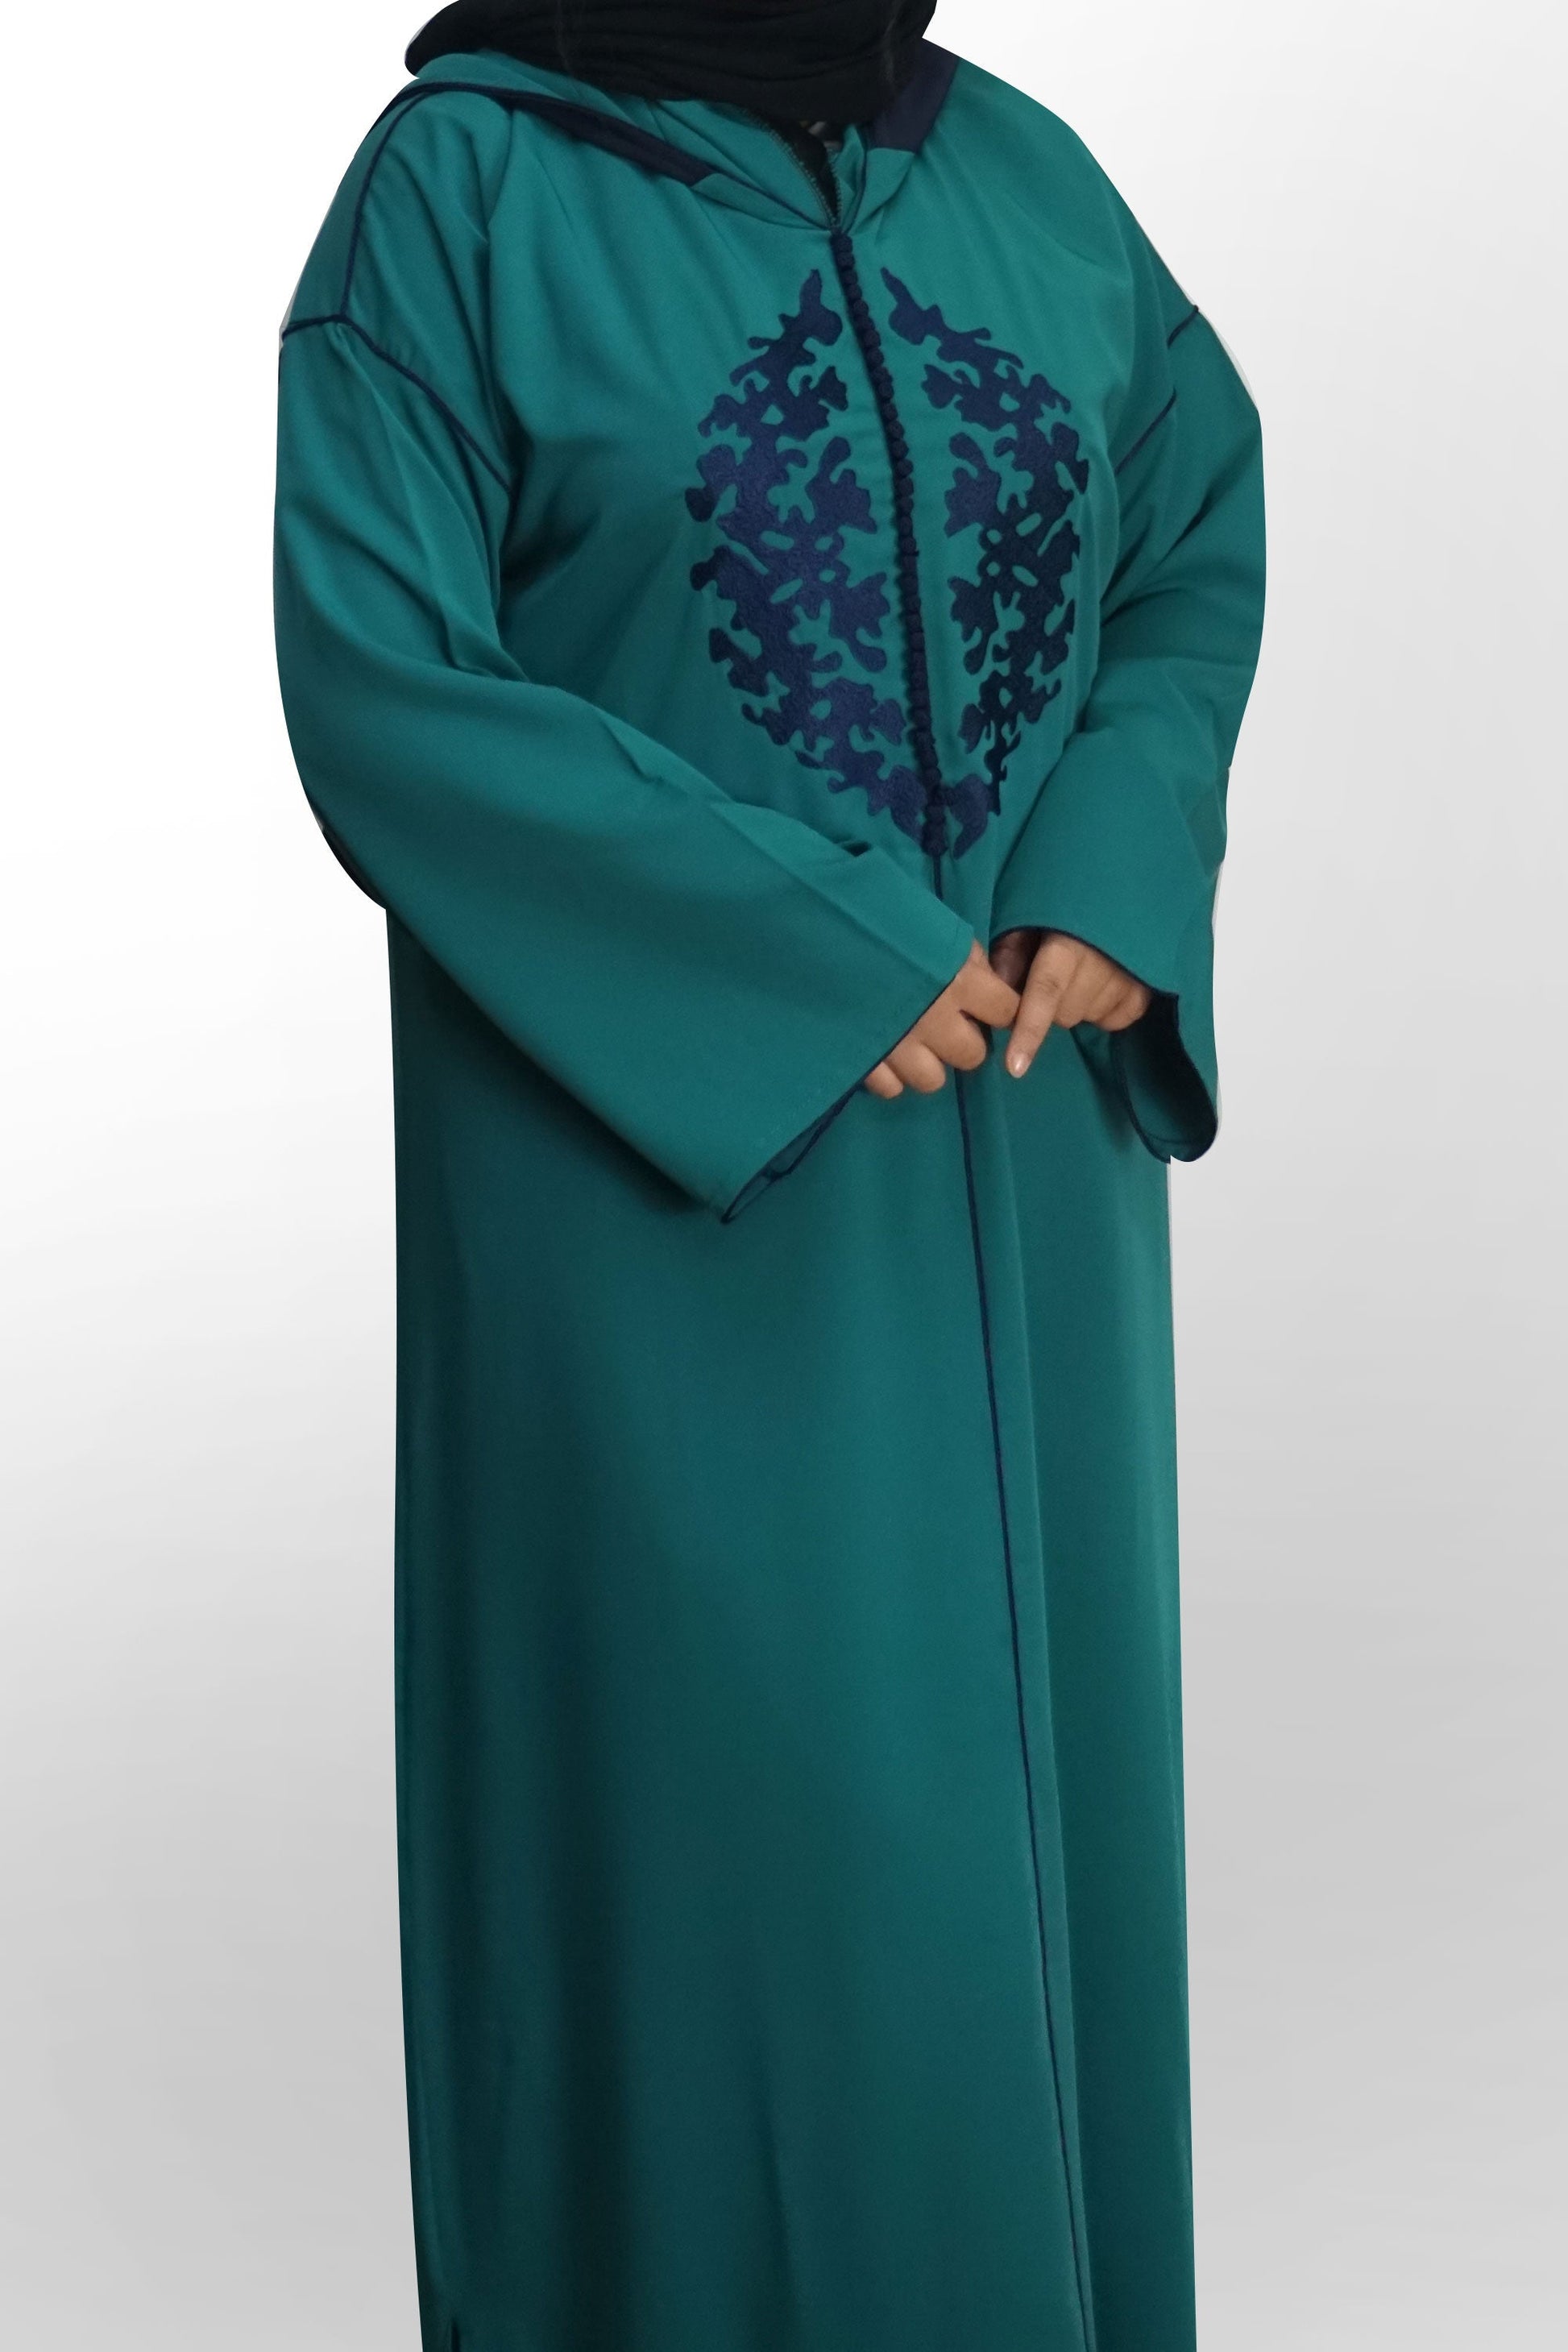 Moroccan Hooded Abaya - Teal-almanaar Islamic Store